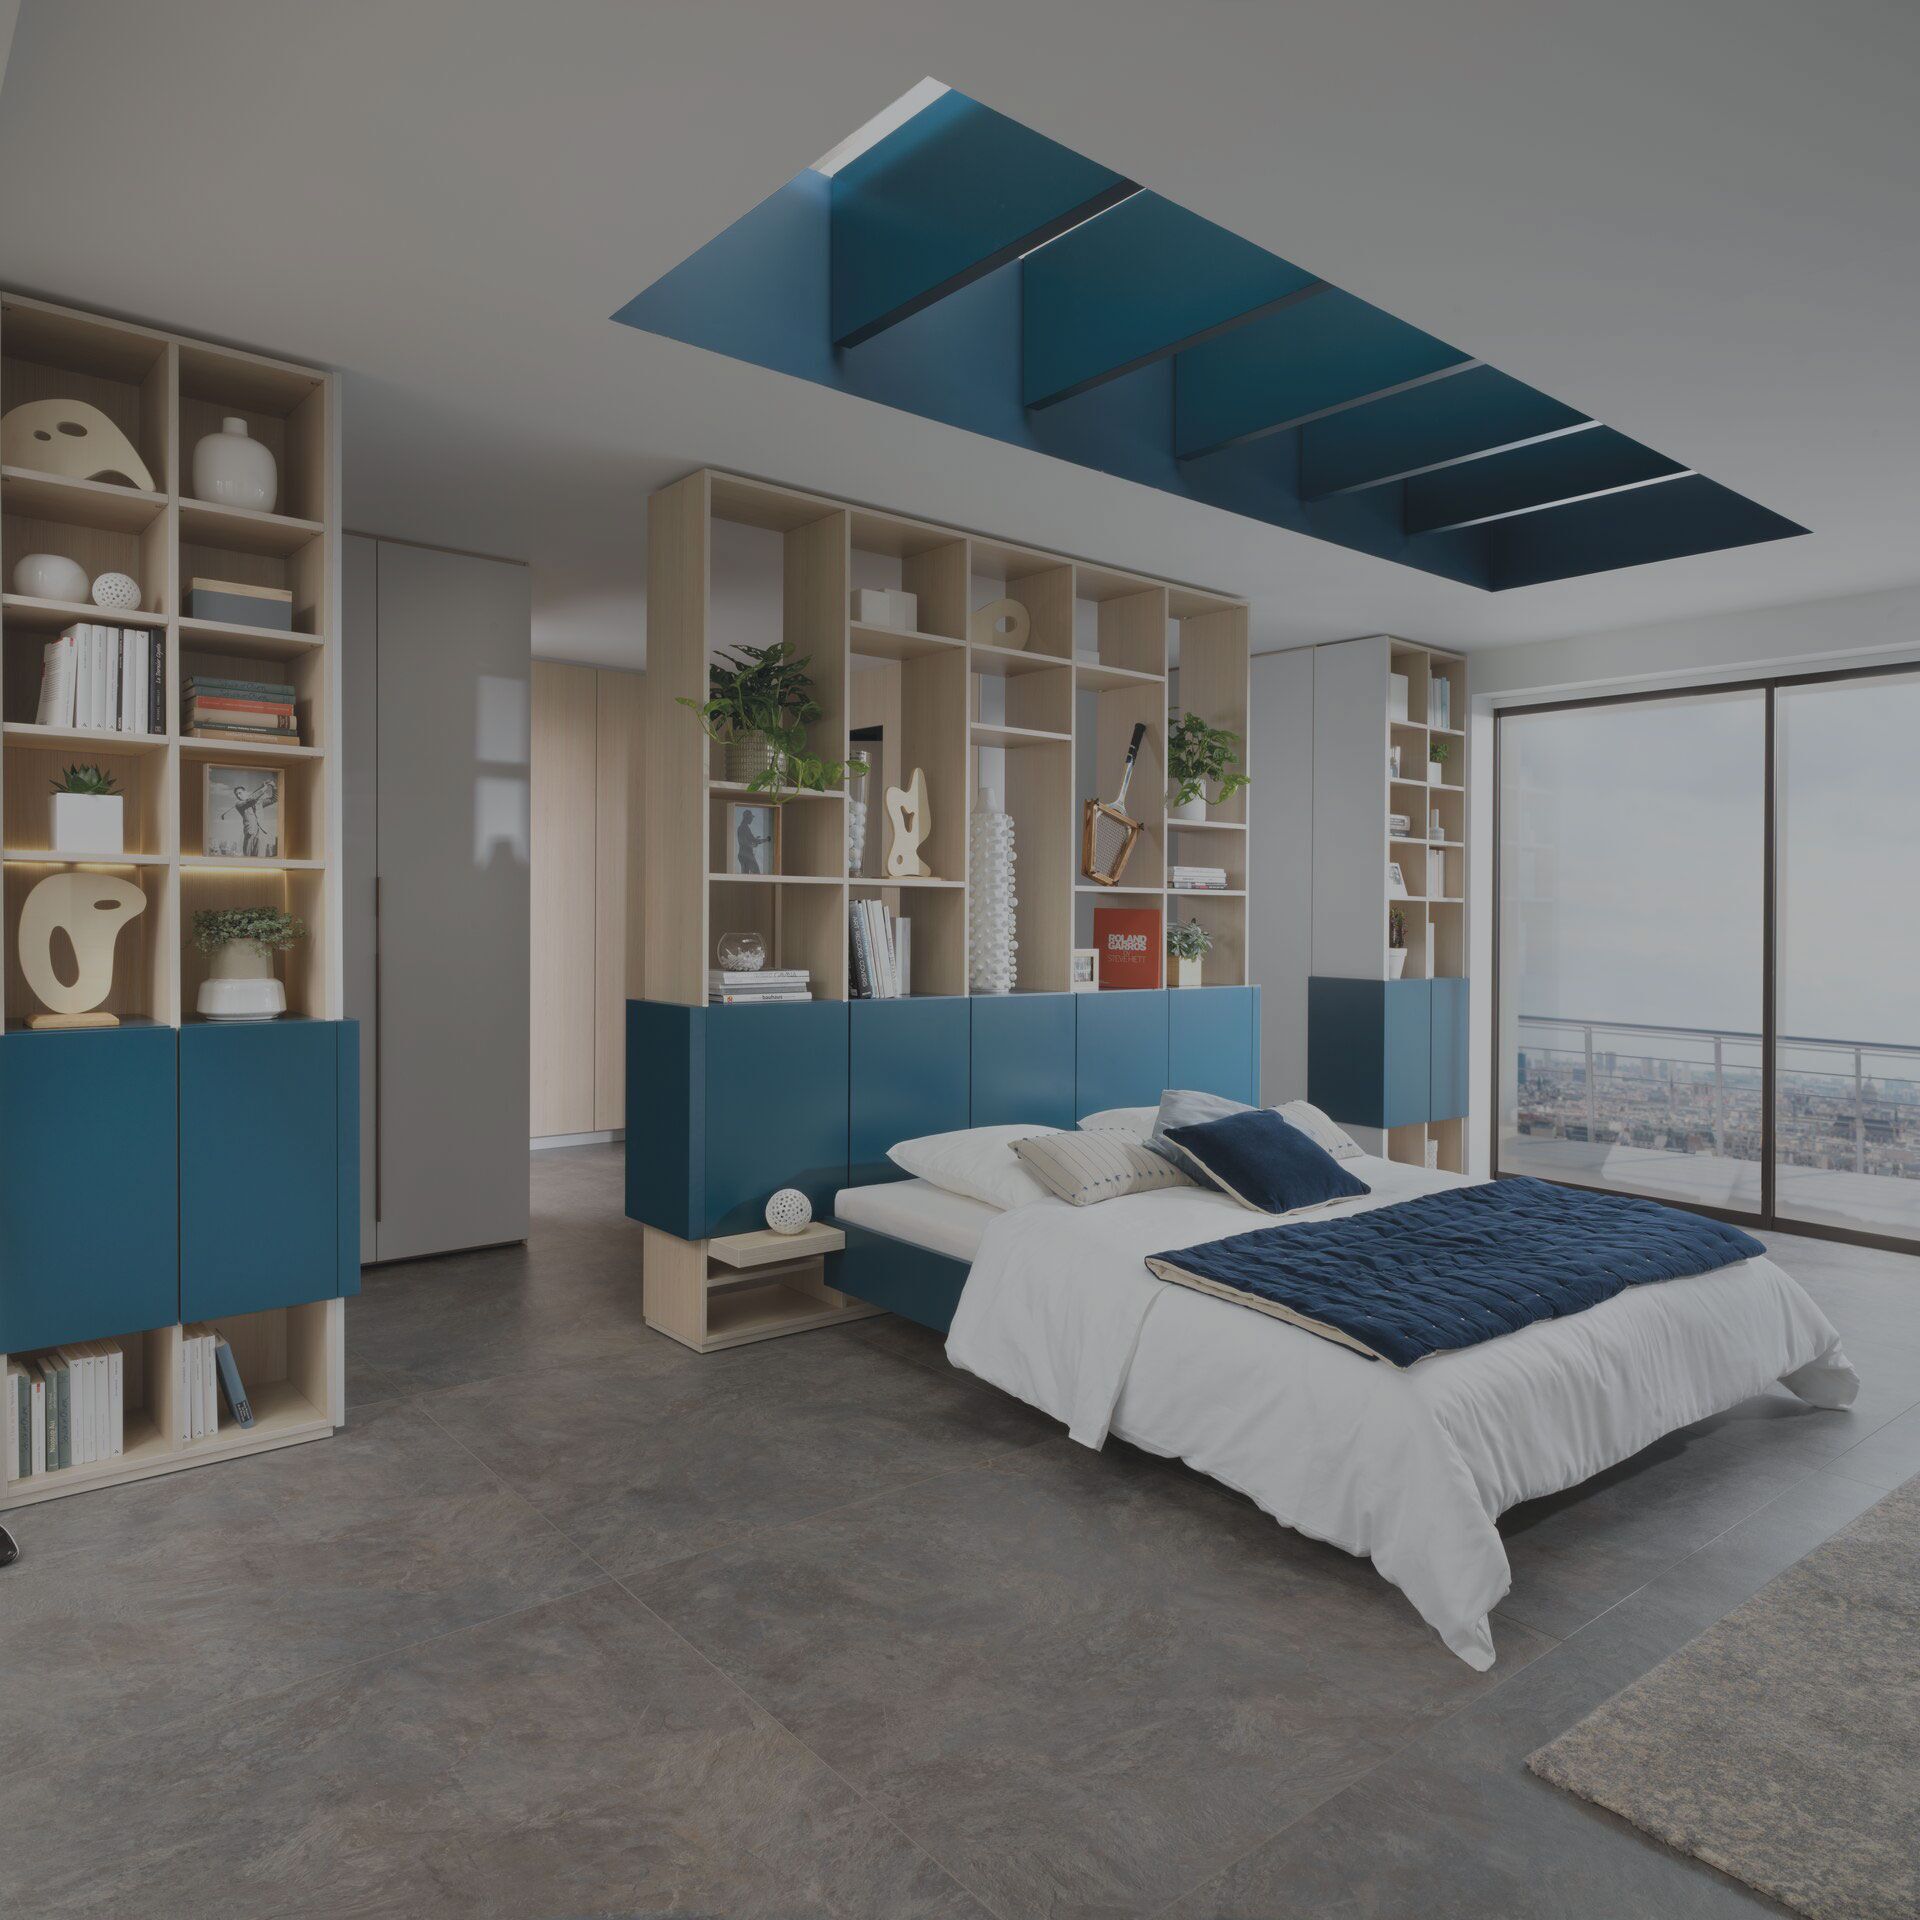 un dormitorio con una cama, escritorio y armarios en la pared al